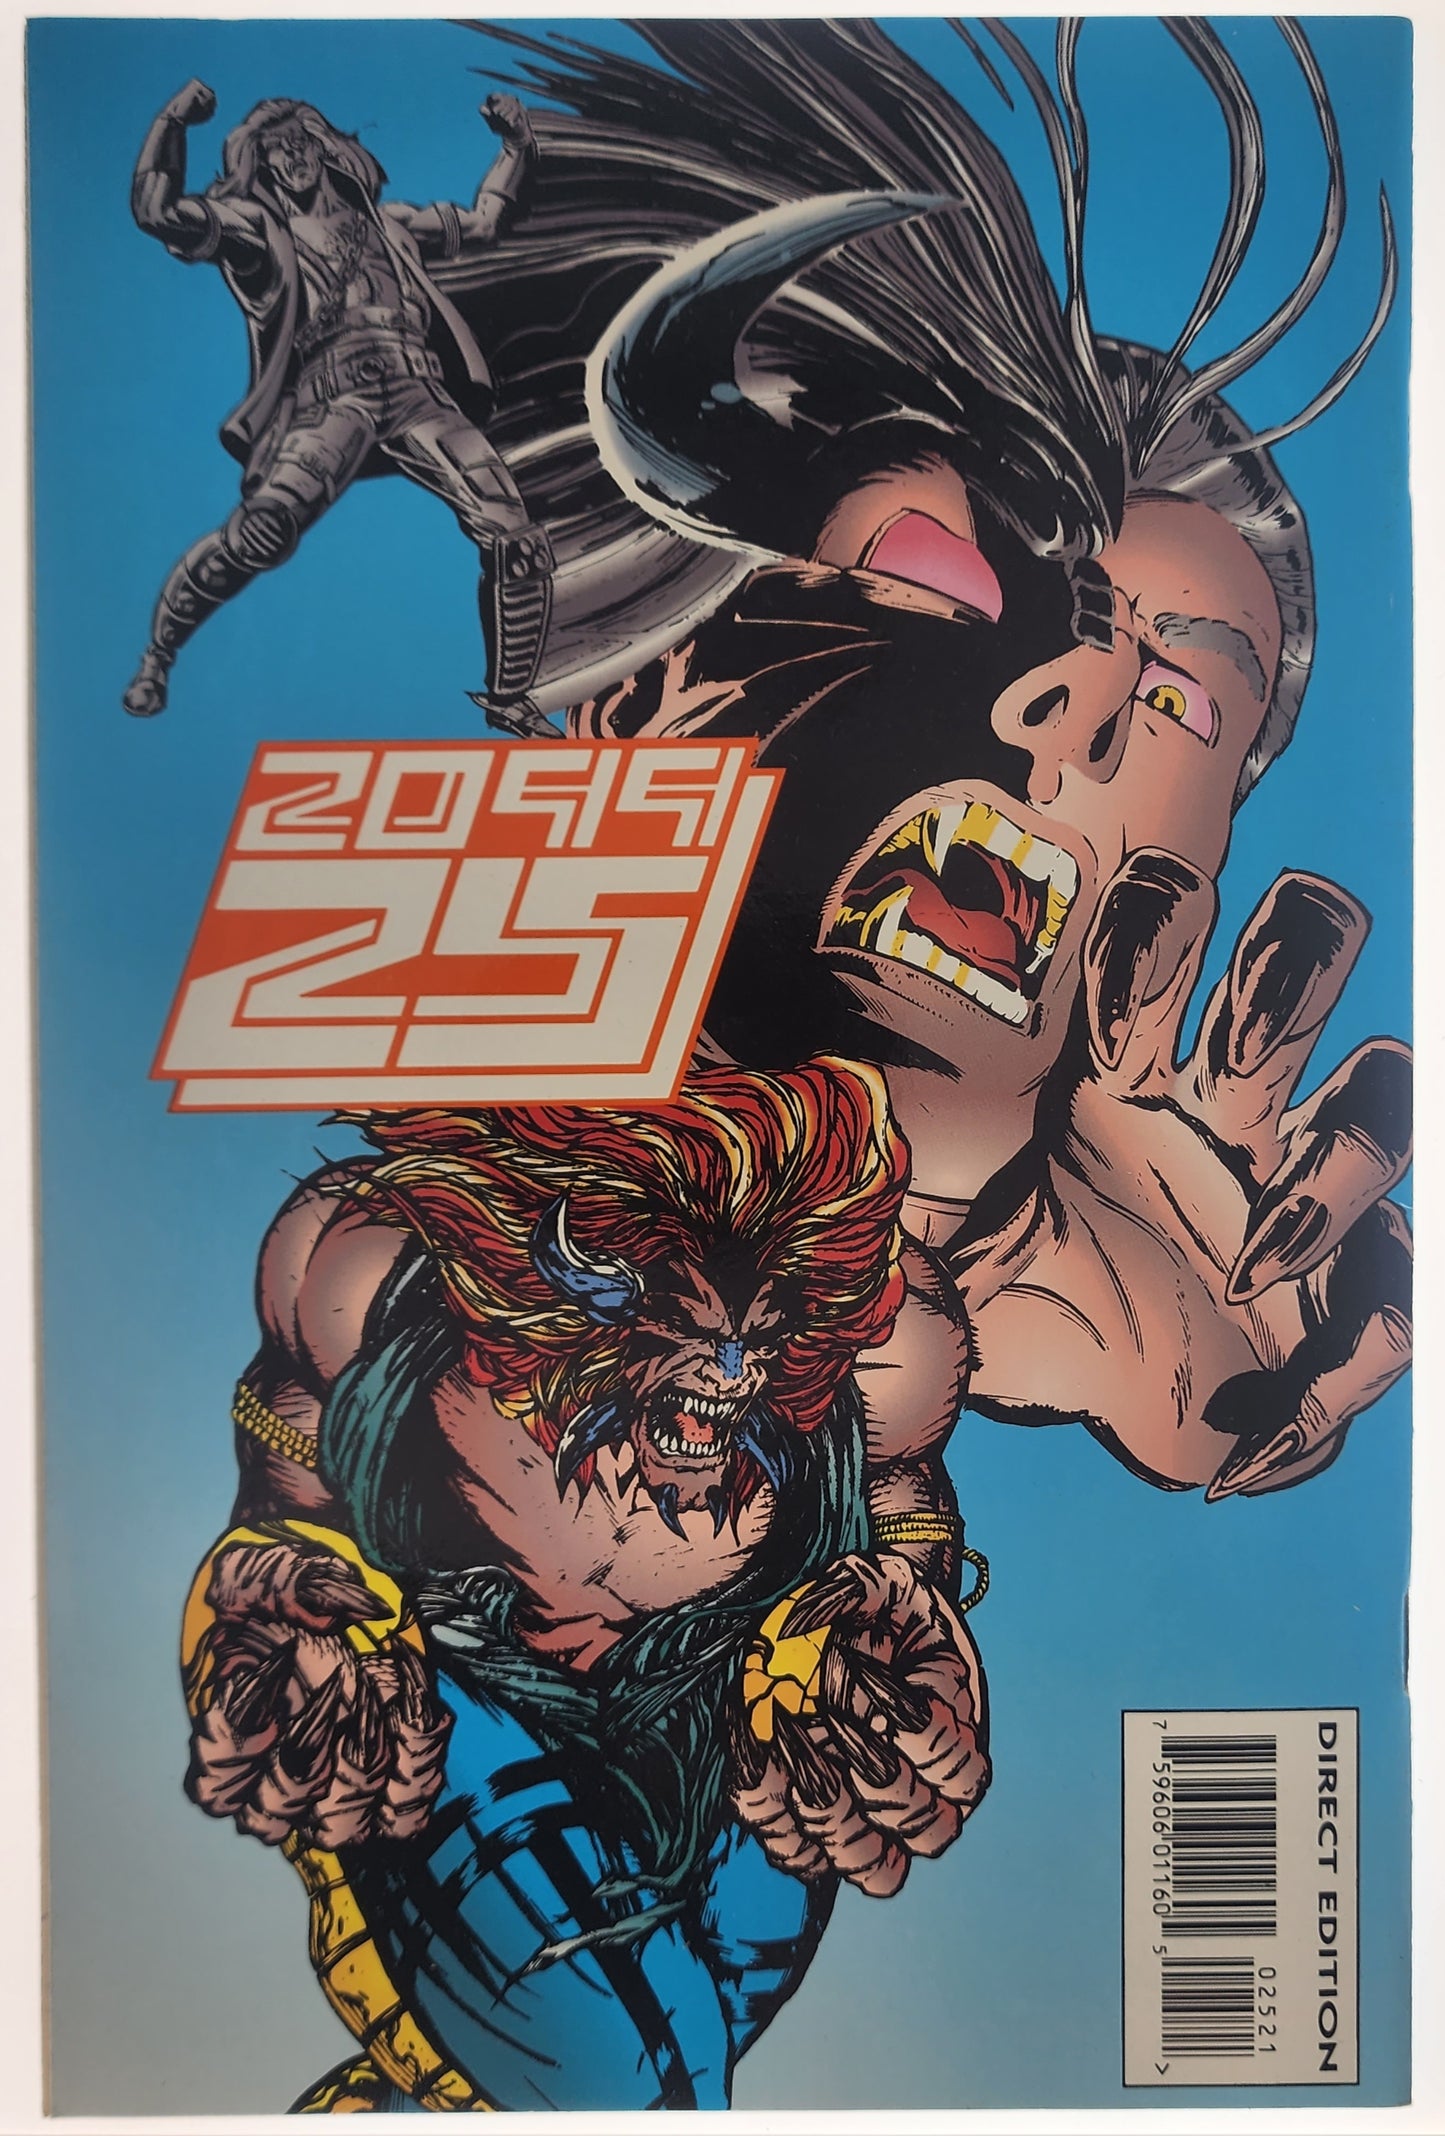 RAVAGE 2099 #6 & RAVAGE 2099 #25 (1994) BUNDLE